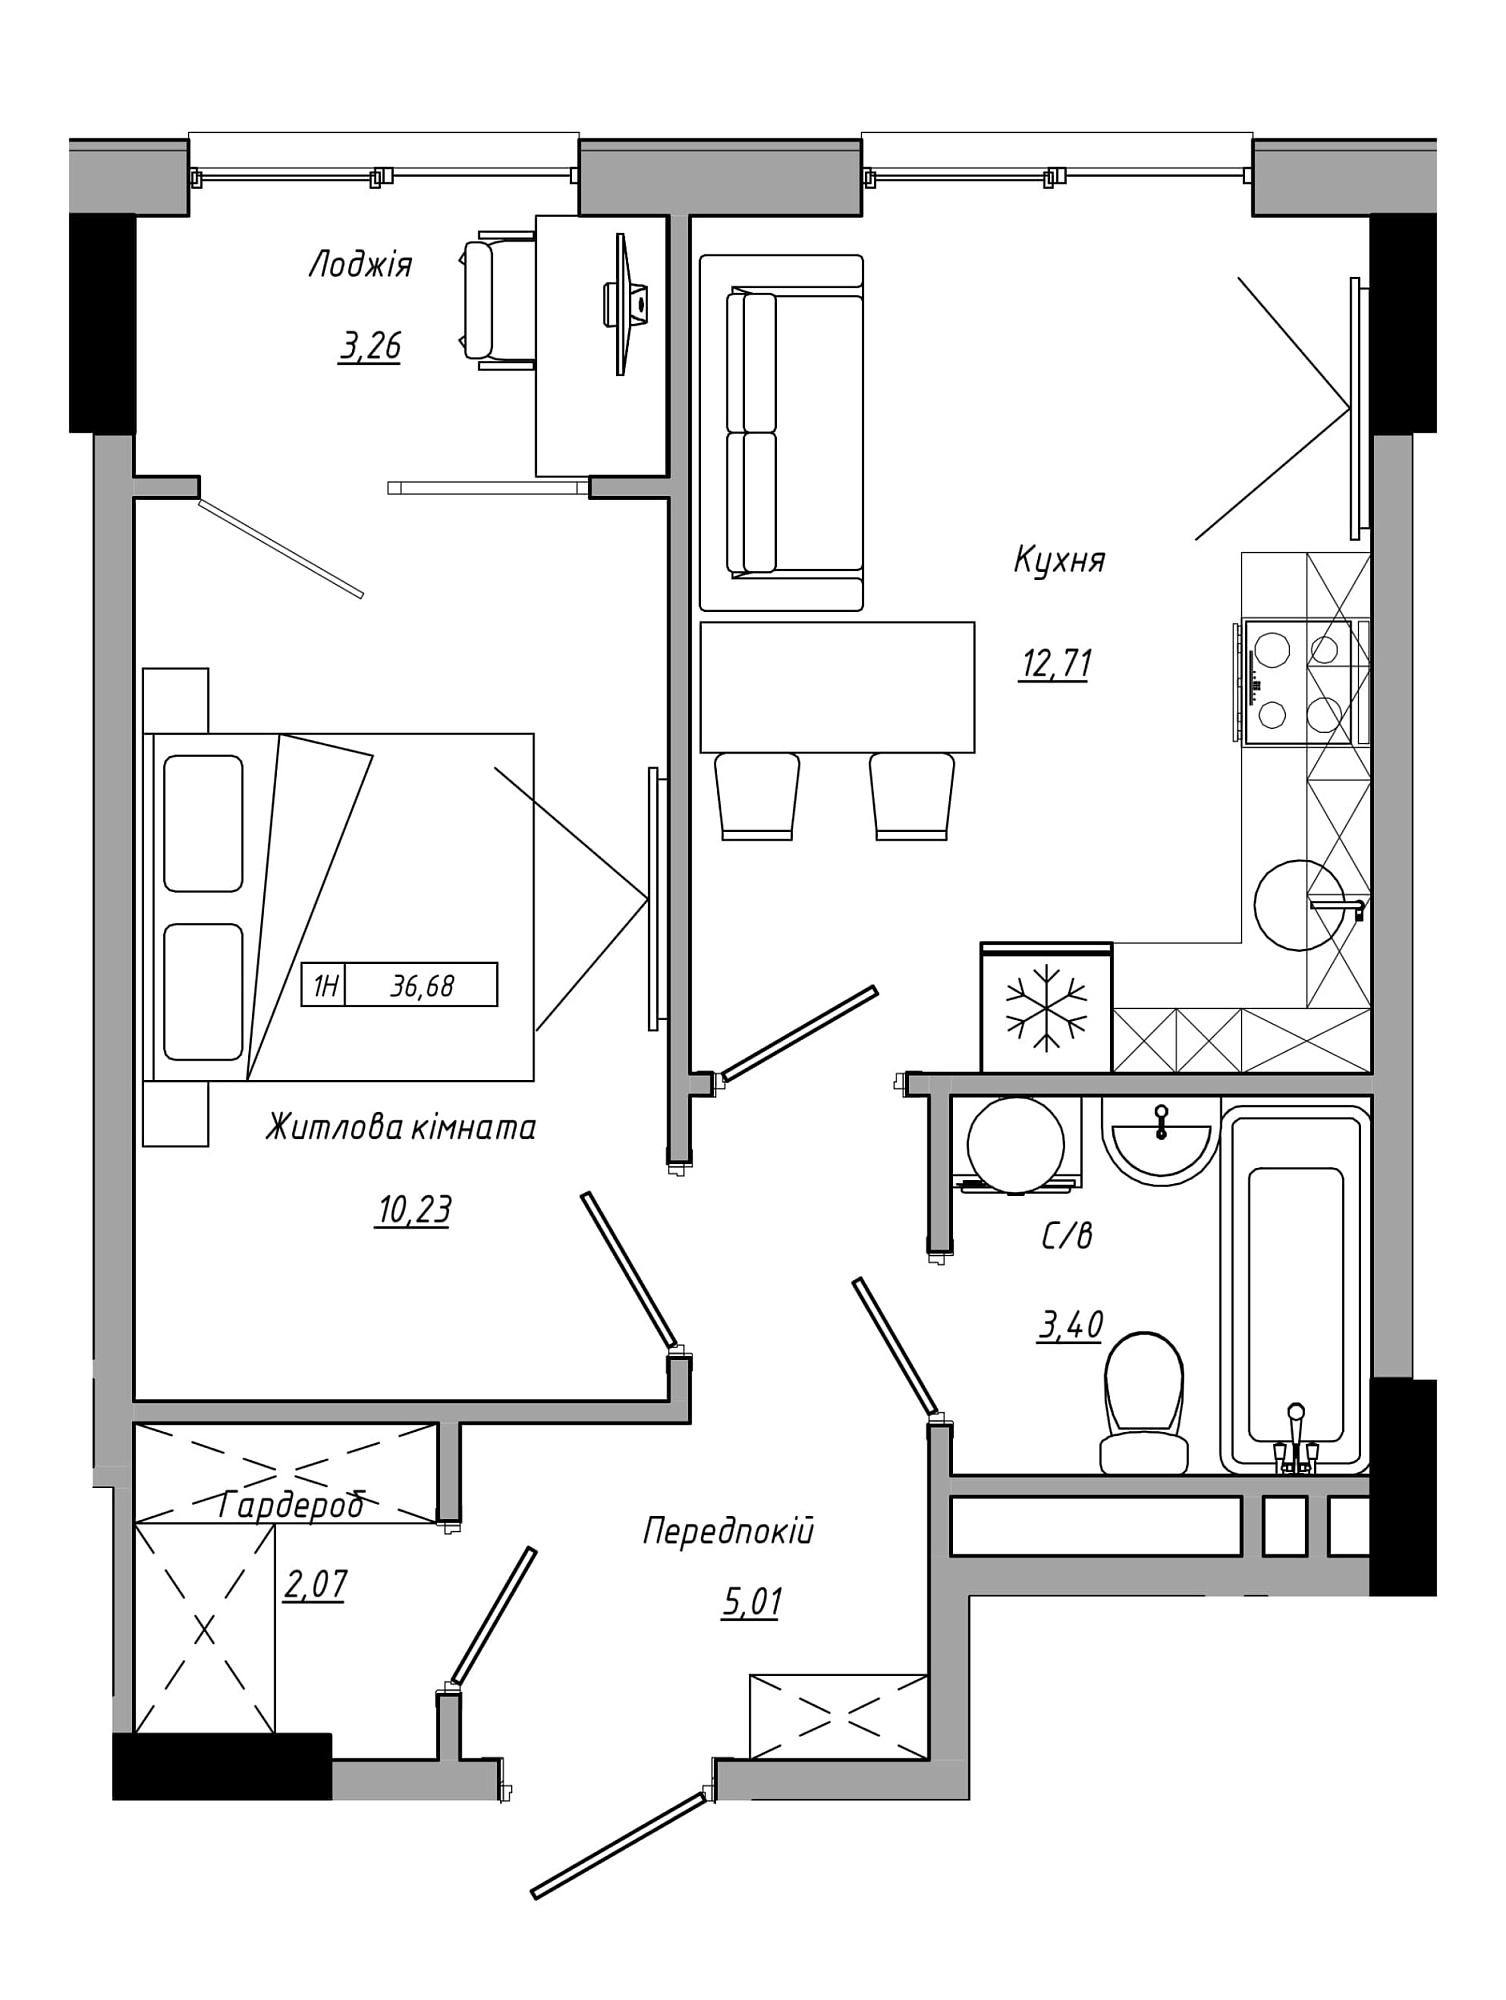 Планування 1-к квартира площею 36.68м2, AB-21-06/00016.